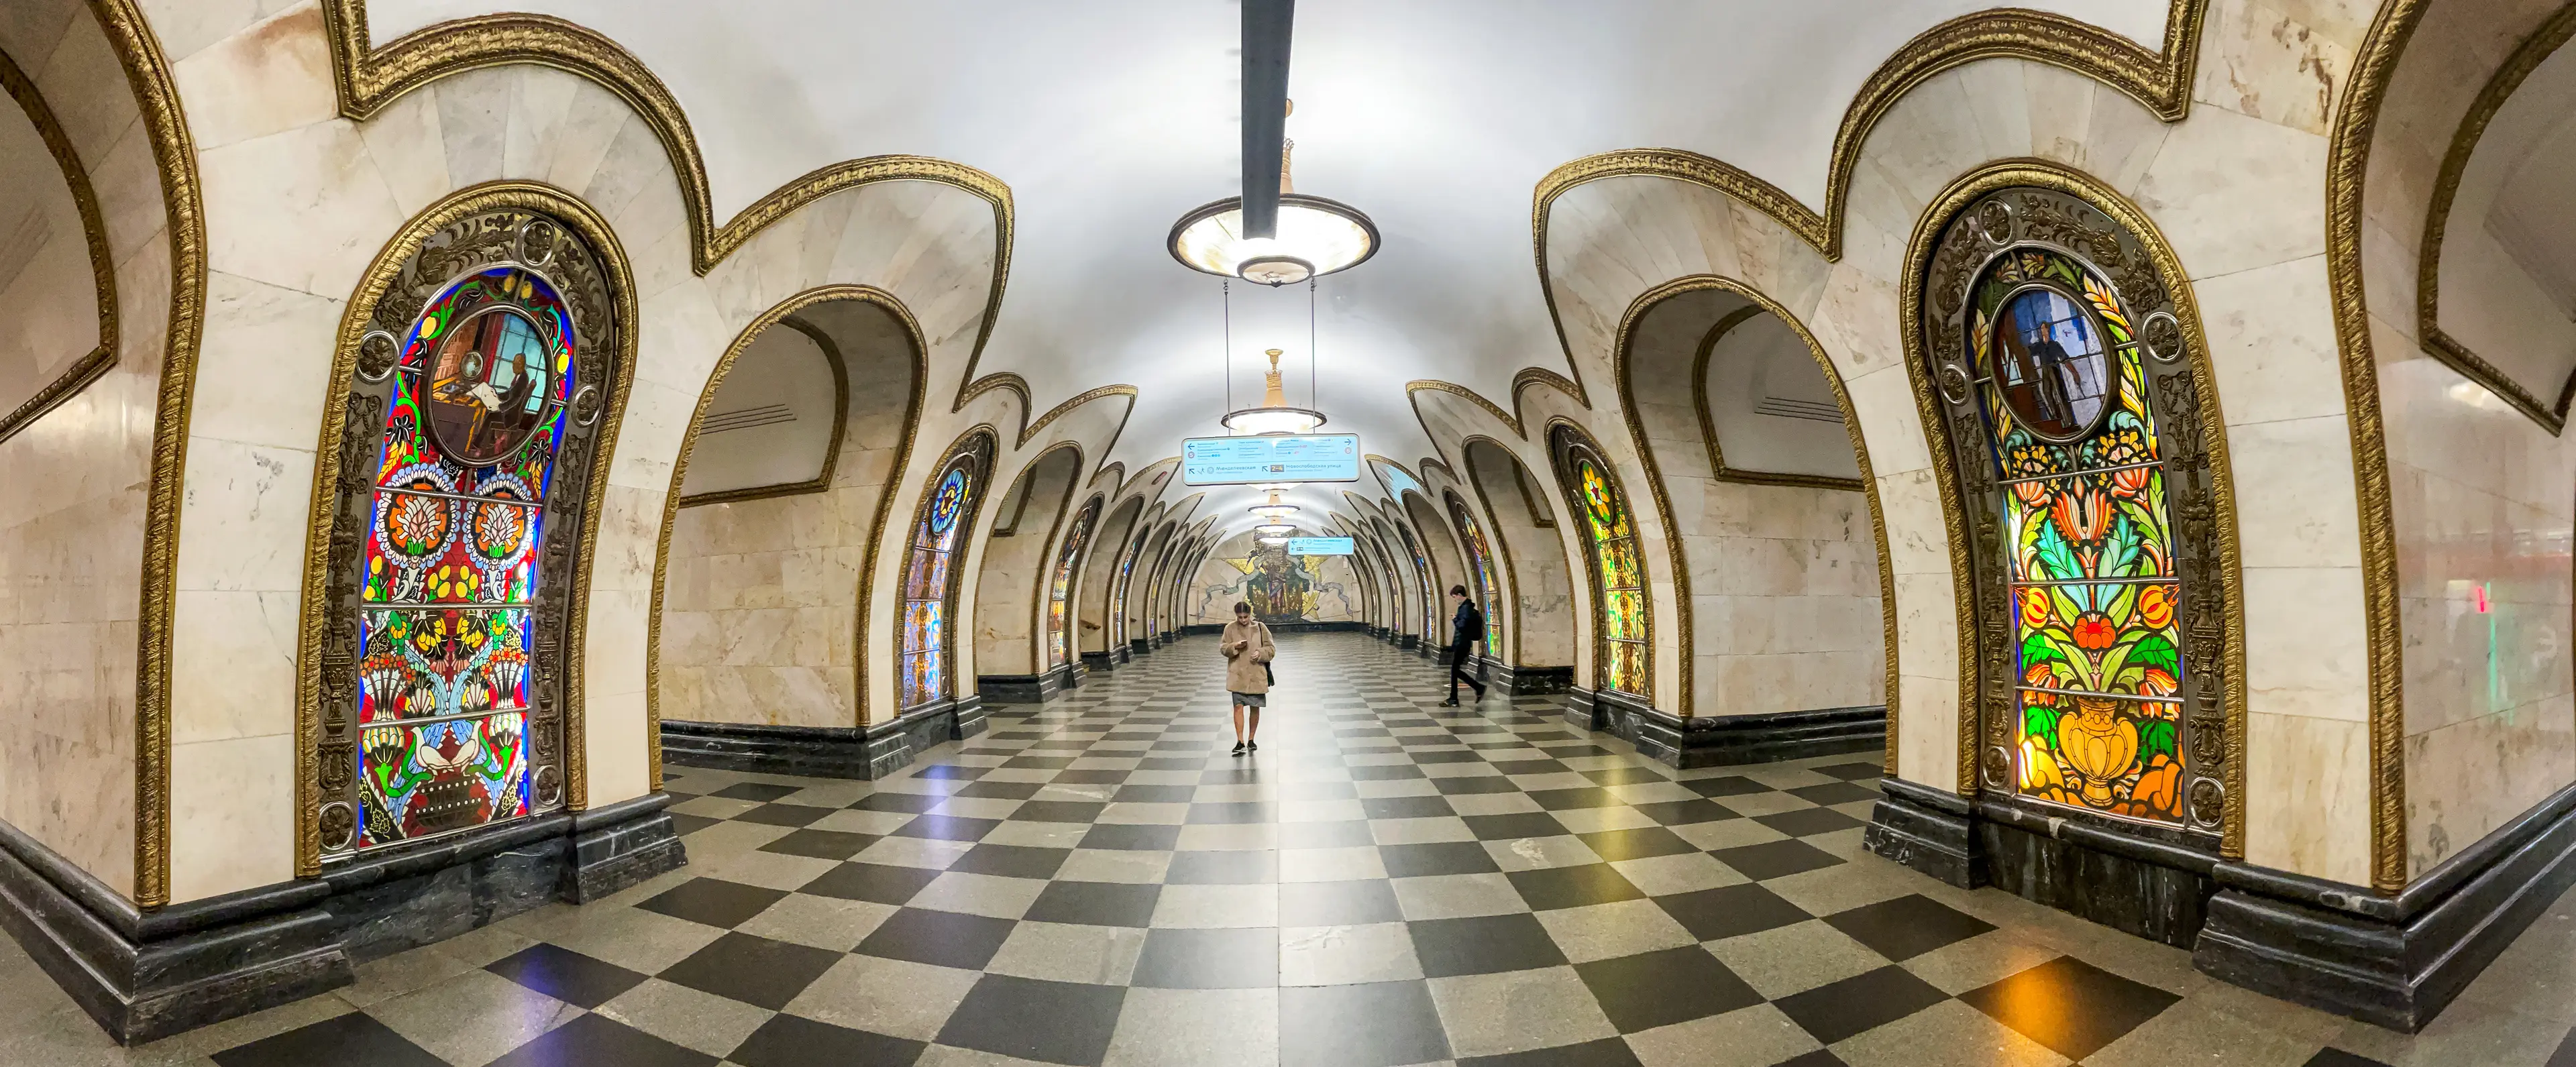 Novoslobodskaya subway station